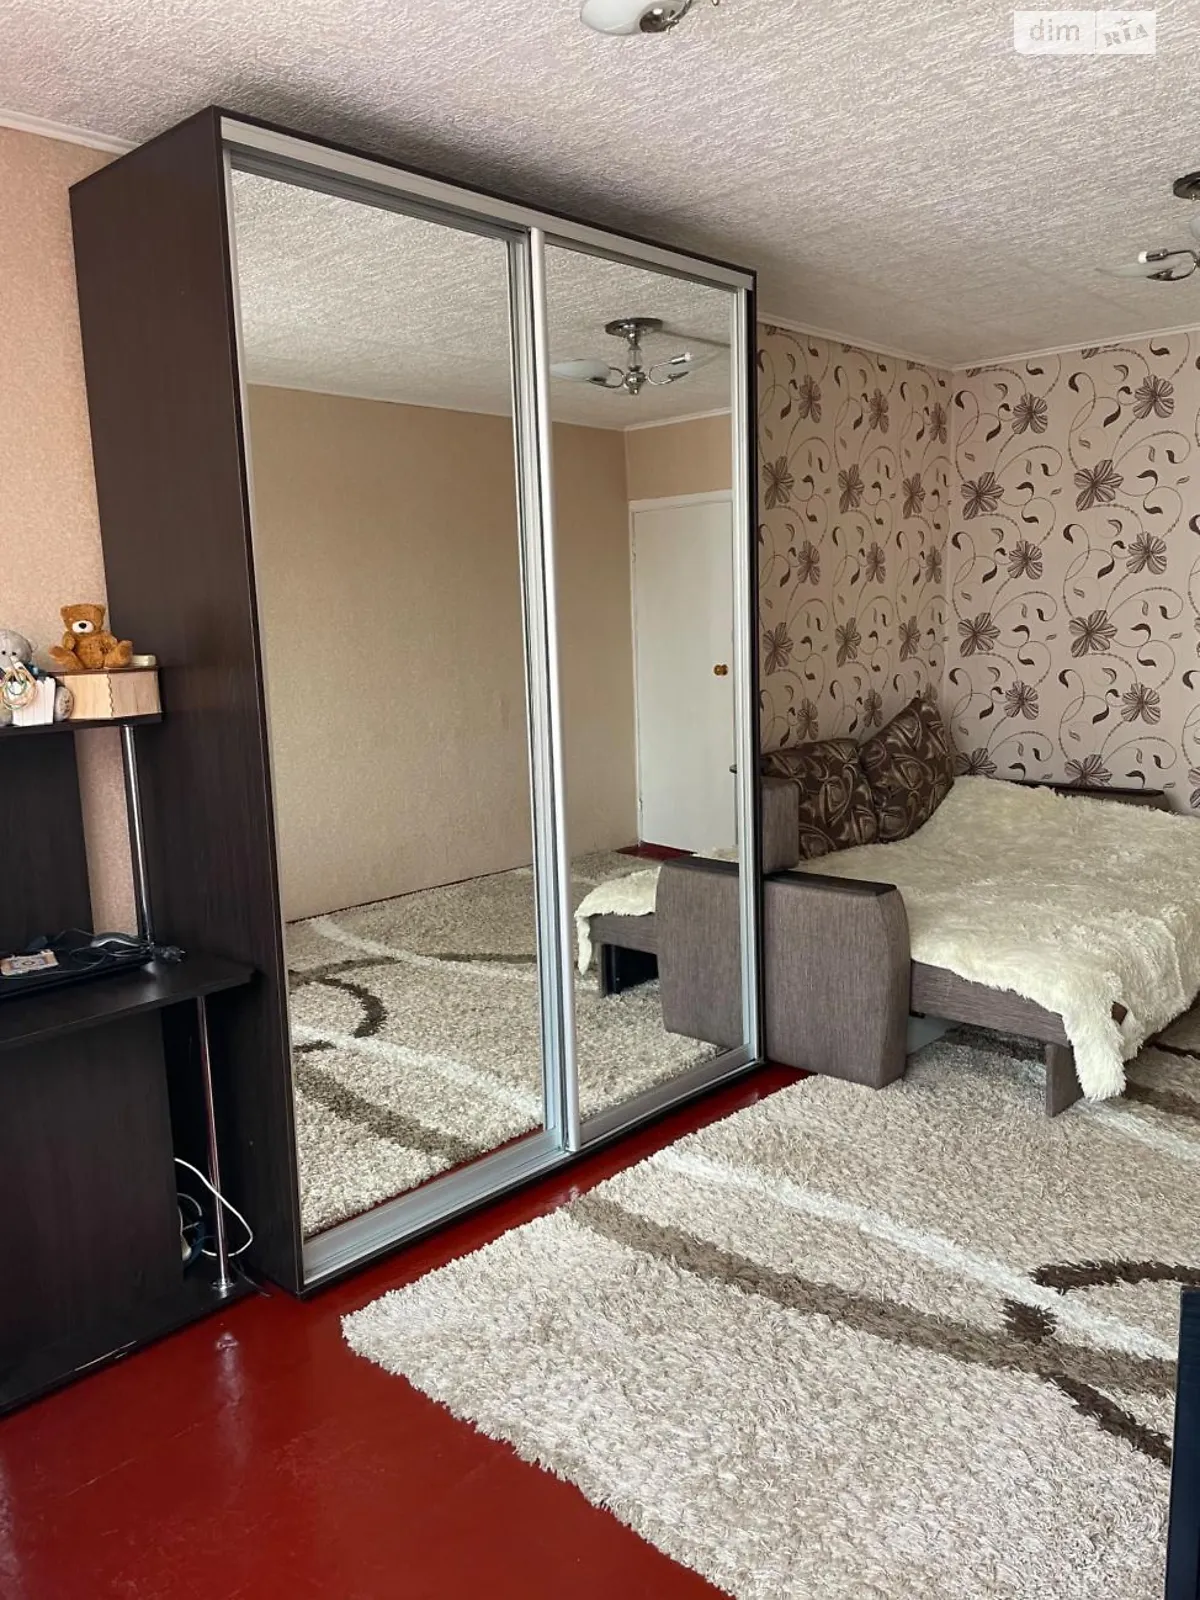 Продается комната 30 кв. м в Одессе - фото 2